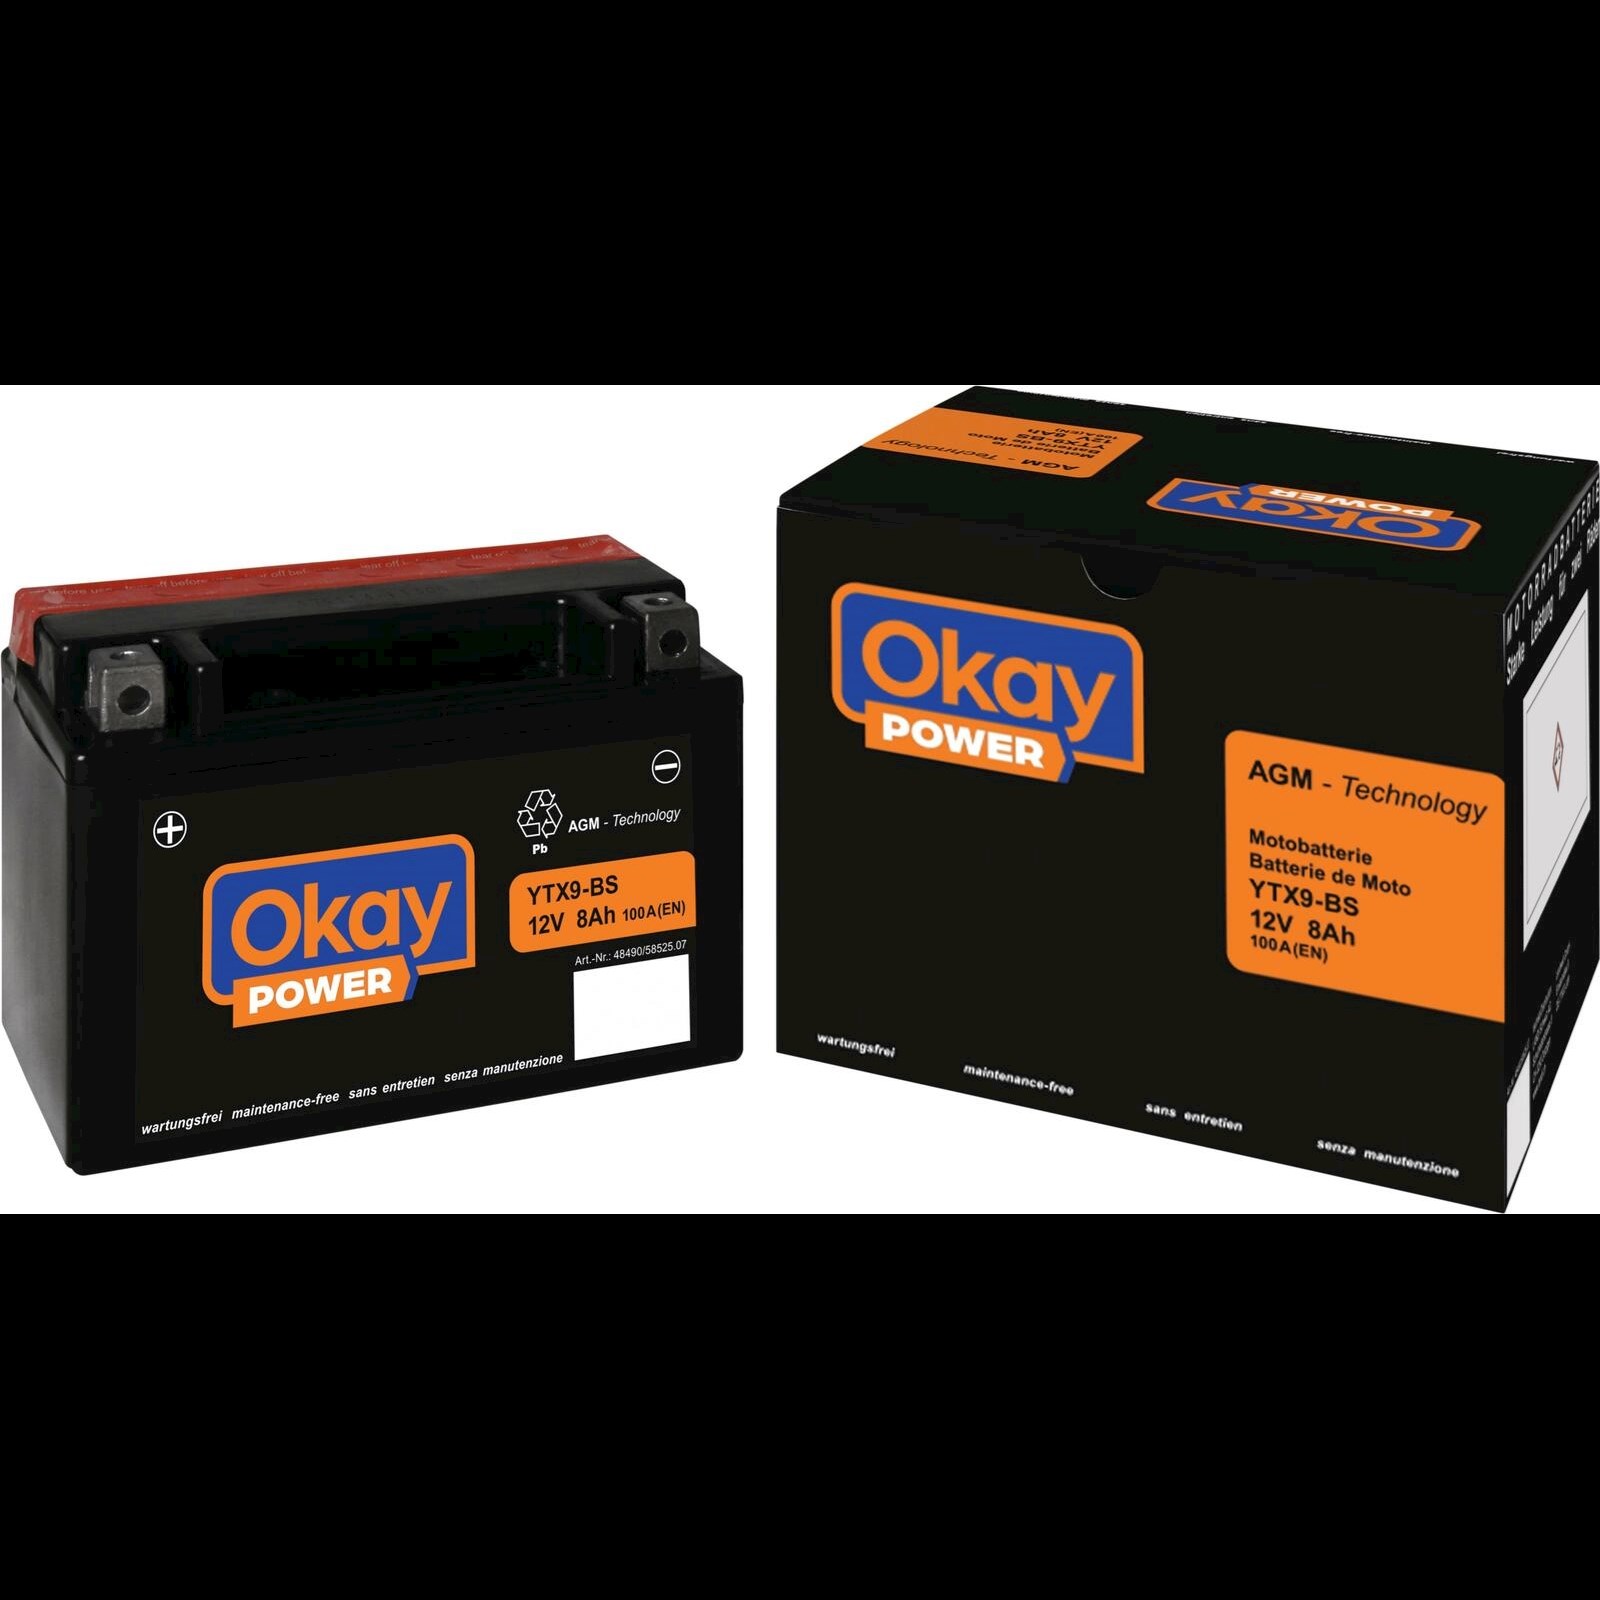 Batterie de démarrage OKAY Power 44Ah/400A Acheter - Accessoires voitures -  LANDI